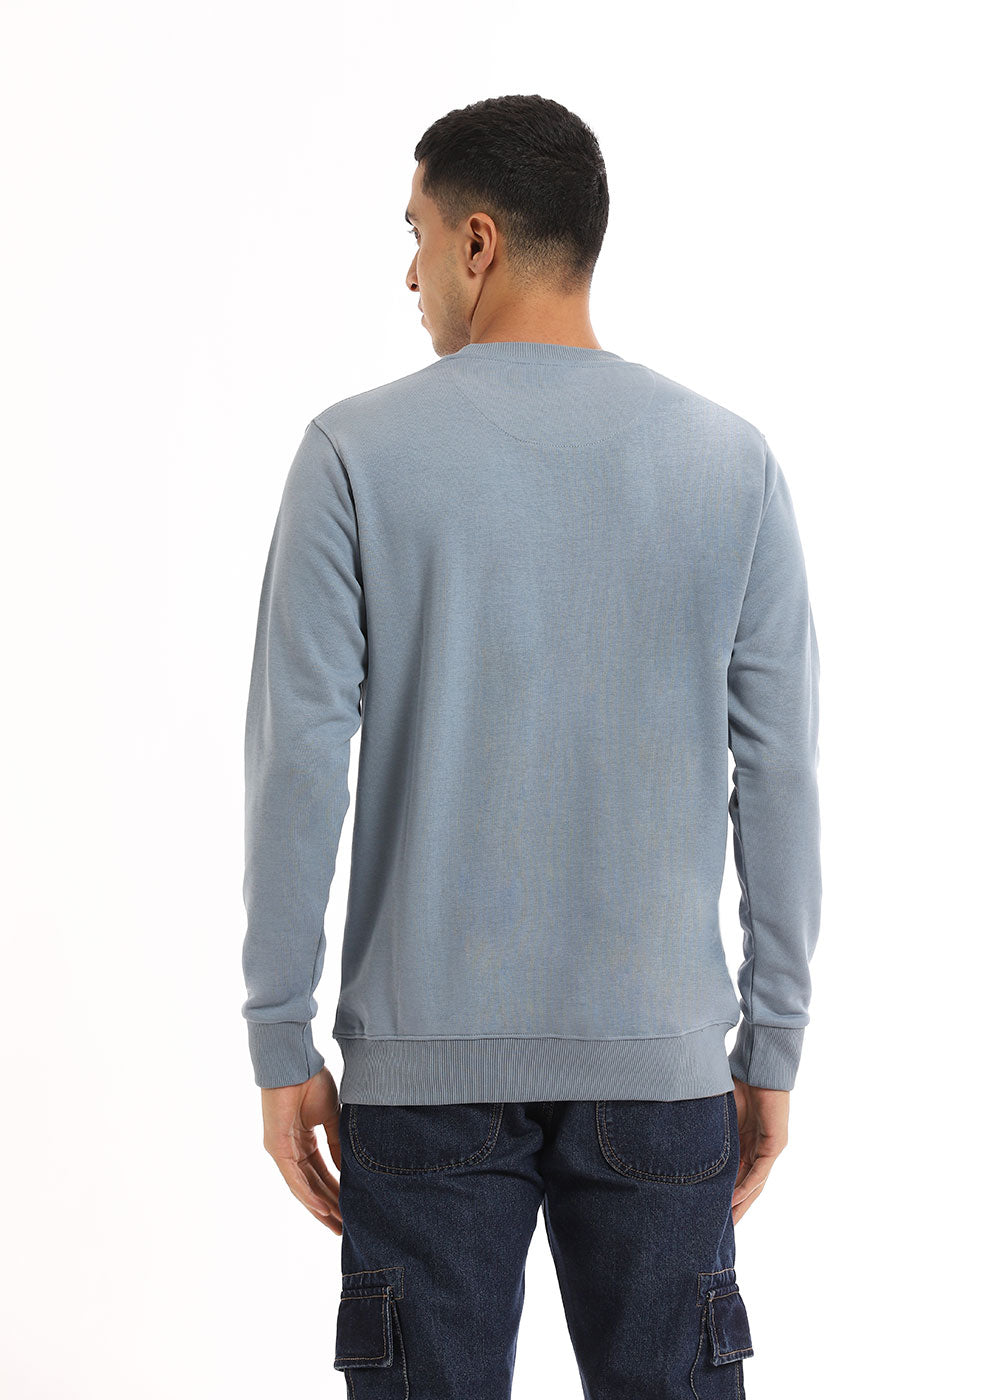 Slate Grey Sweatshirt